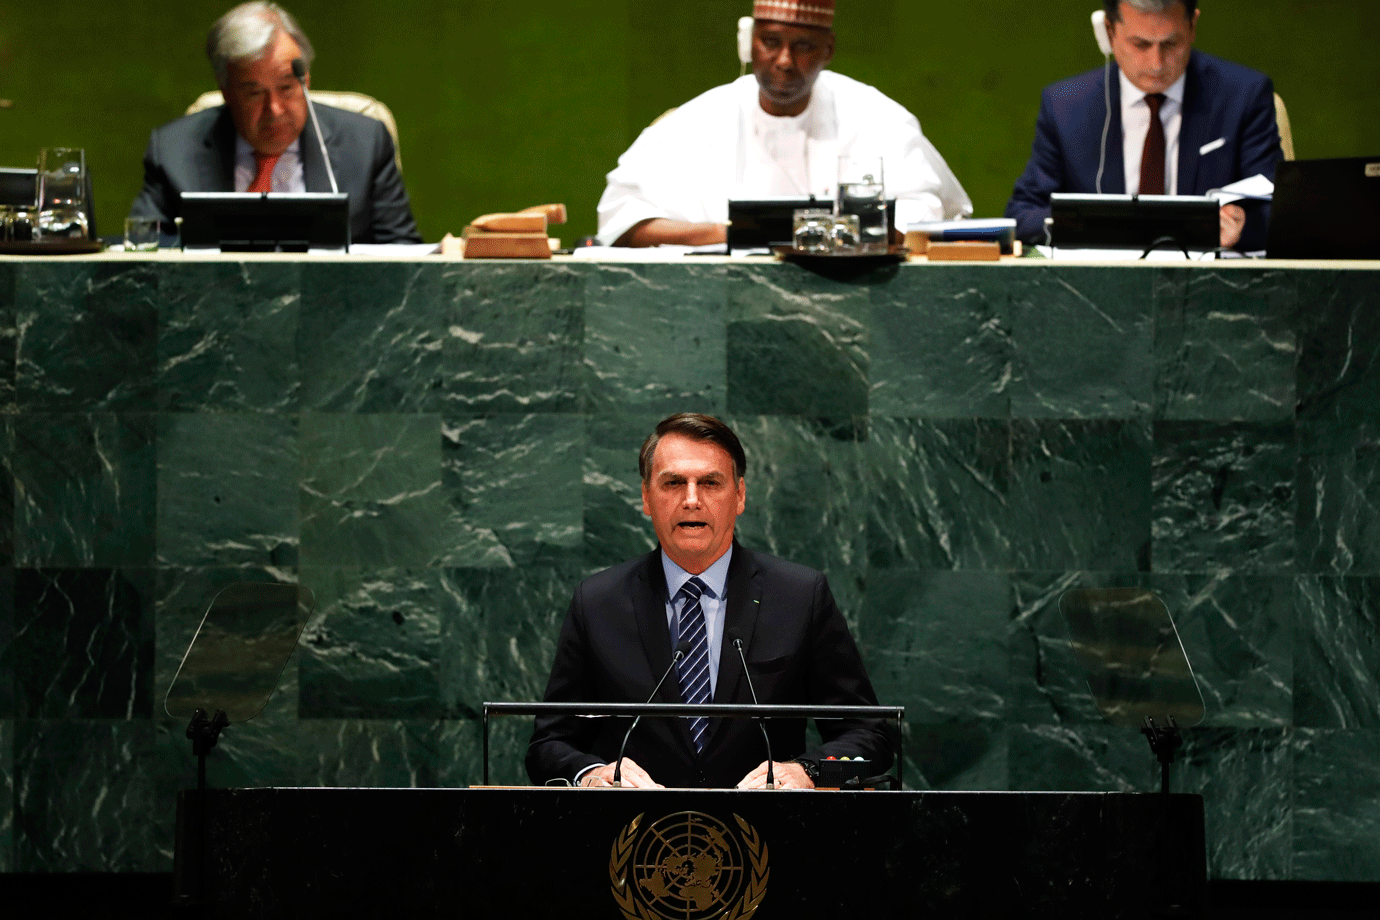 Na ONU, Bolsonaro rebaterá críticas à gestão da pandemia e queimadas | Exame